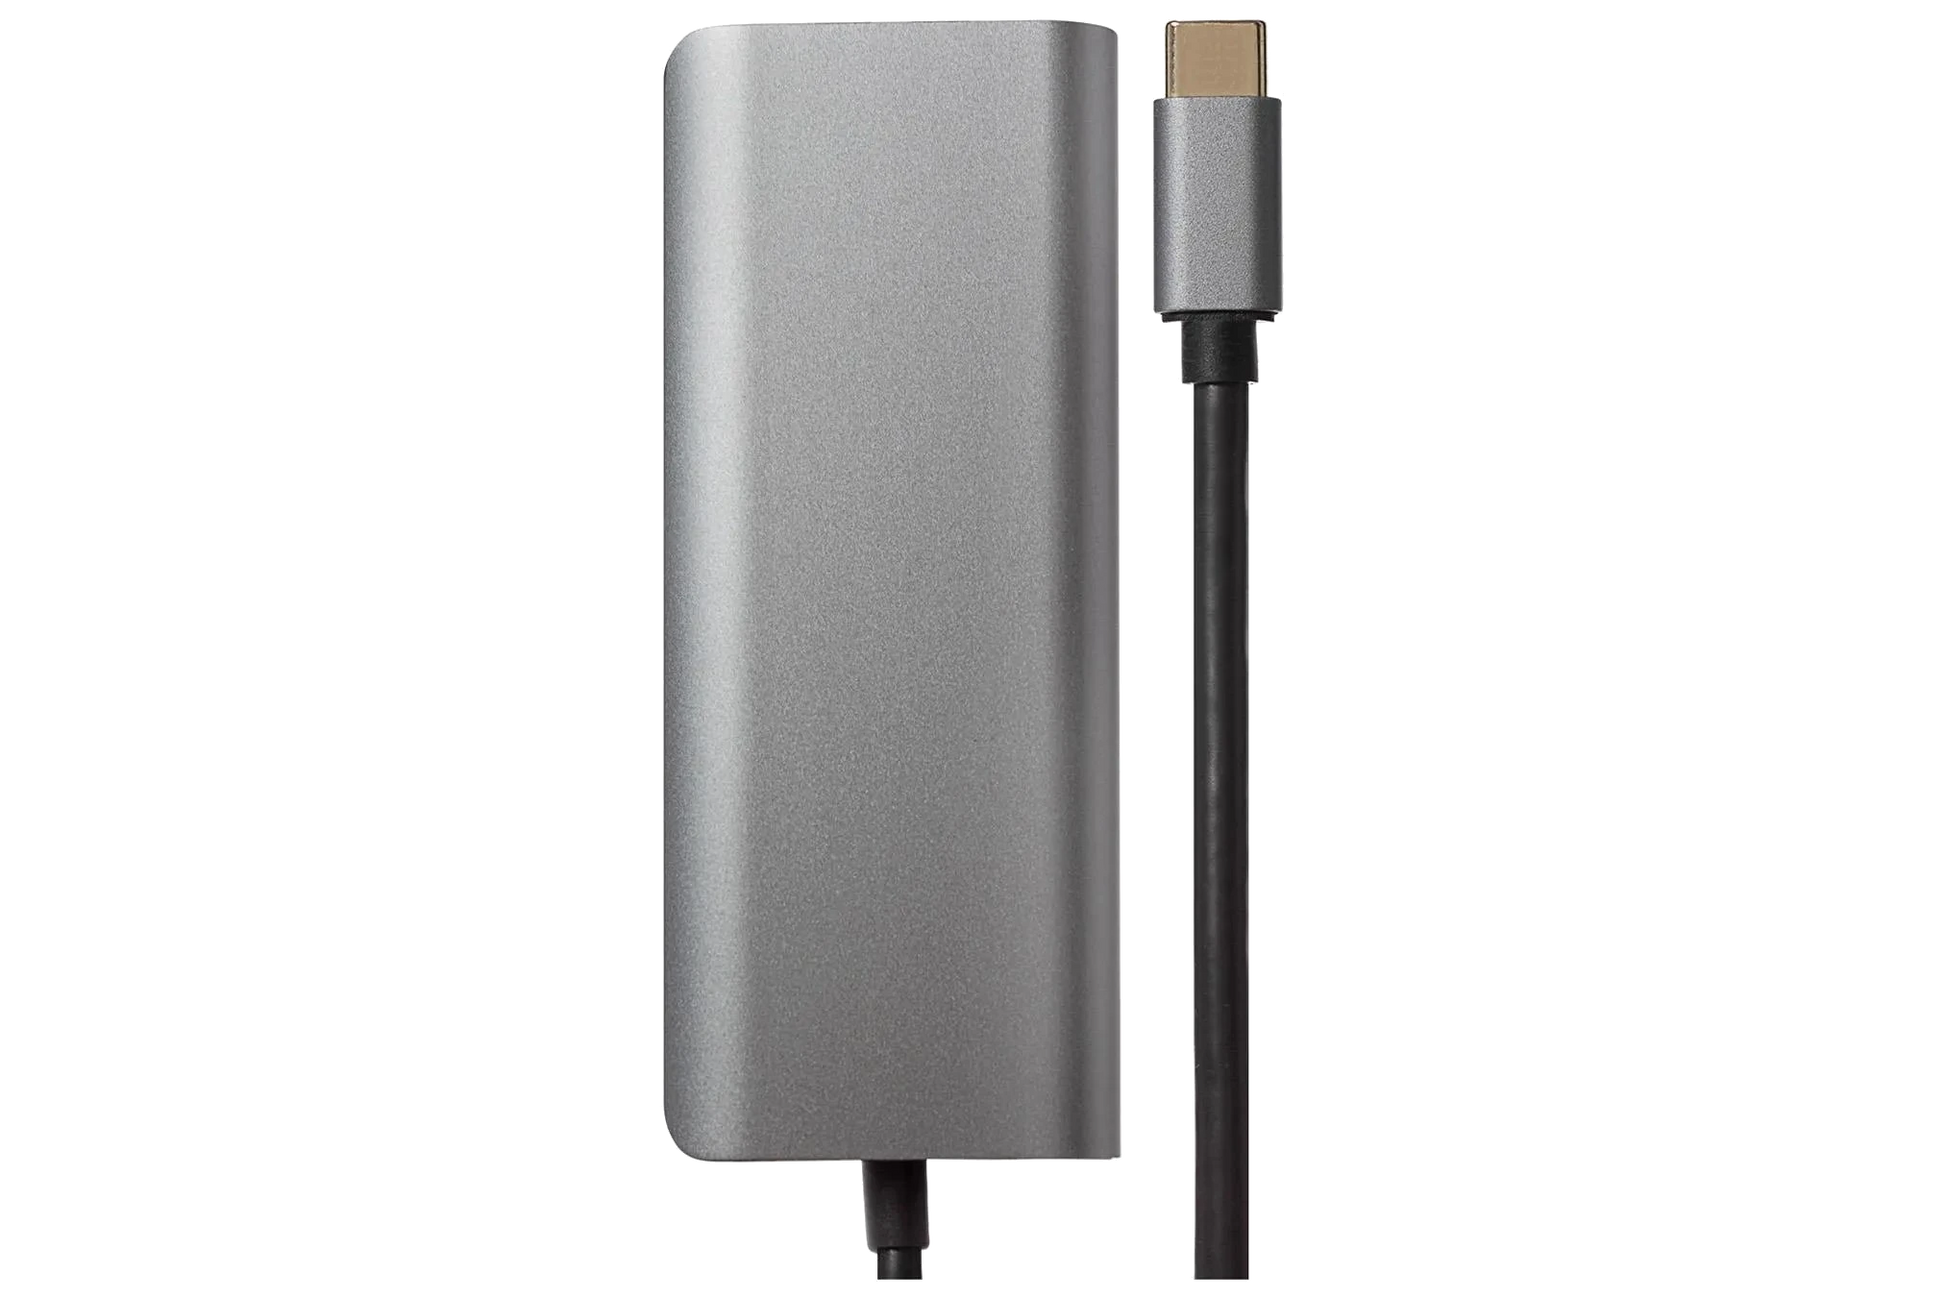 Nikkai USB-C to USB-A 3.0 x2 / RJ45 / HDMI / USB-C / SD Card Reader Docking Station - Silver - Nikkai.co